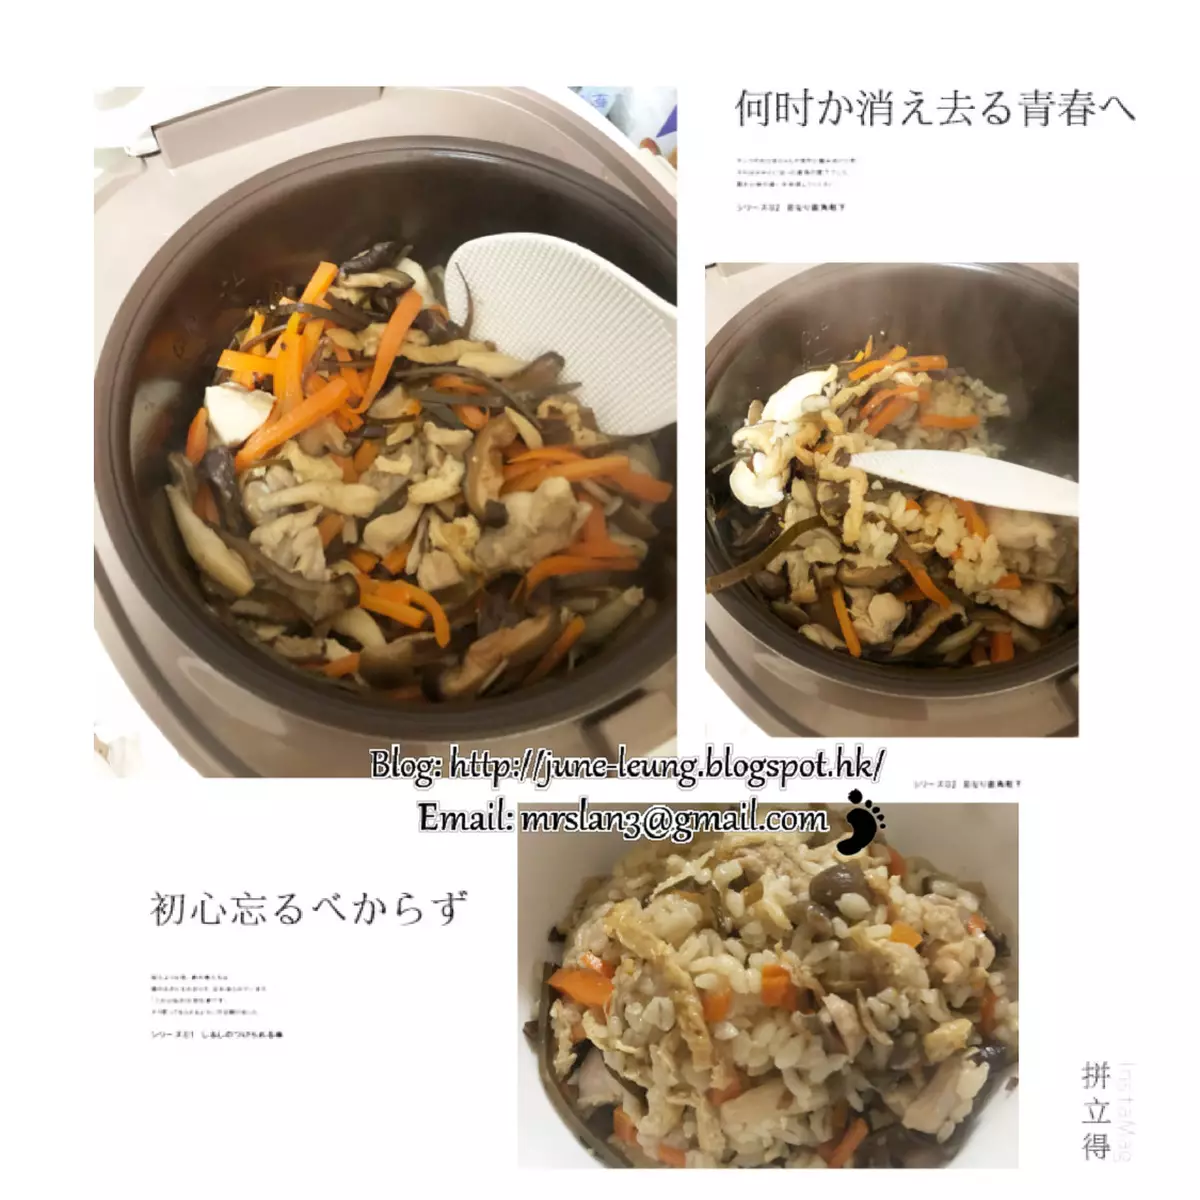 [電飯煲簡易煮] 日式雞肉炊飯